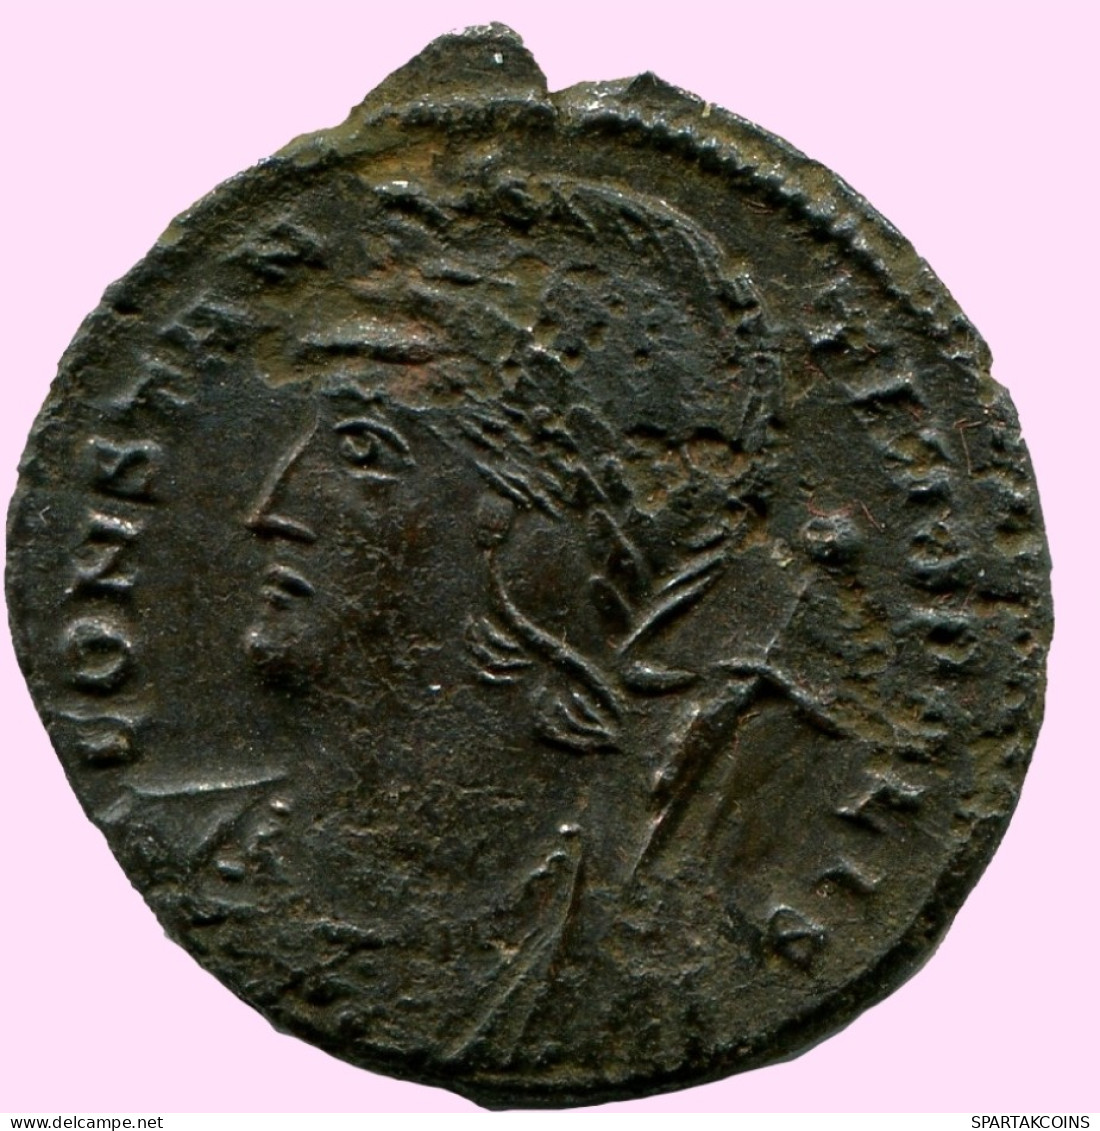 CONSTANTINUS I CONSTANTINOPOLI FOLLIS Romano ANTIGUO Moneda #ANC12070.25.E.A - The Christian Empire (307 AD Tot 363 AD)